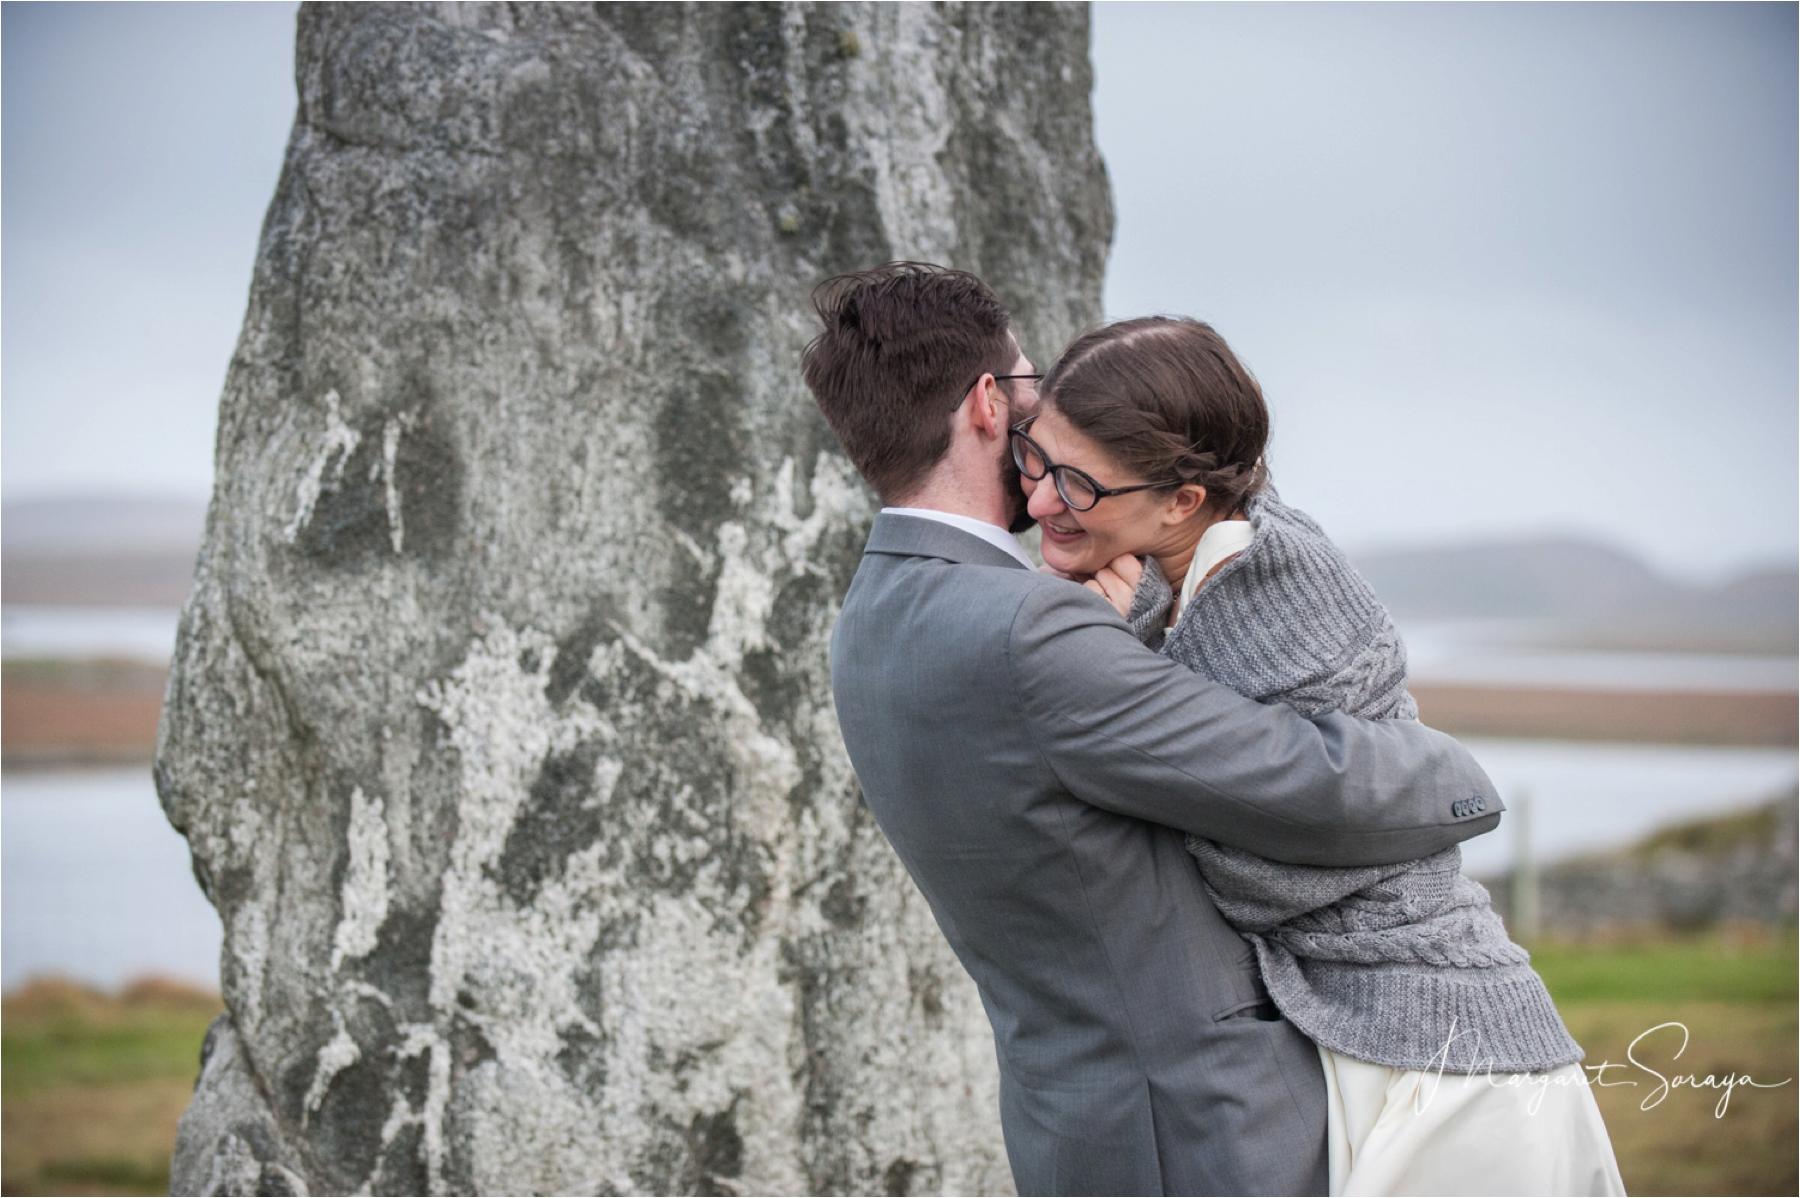 Destination elopement wedding Scottish island stornoway photographer 